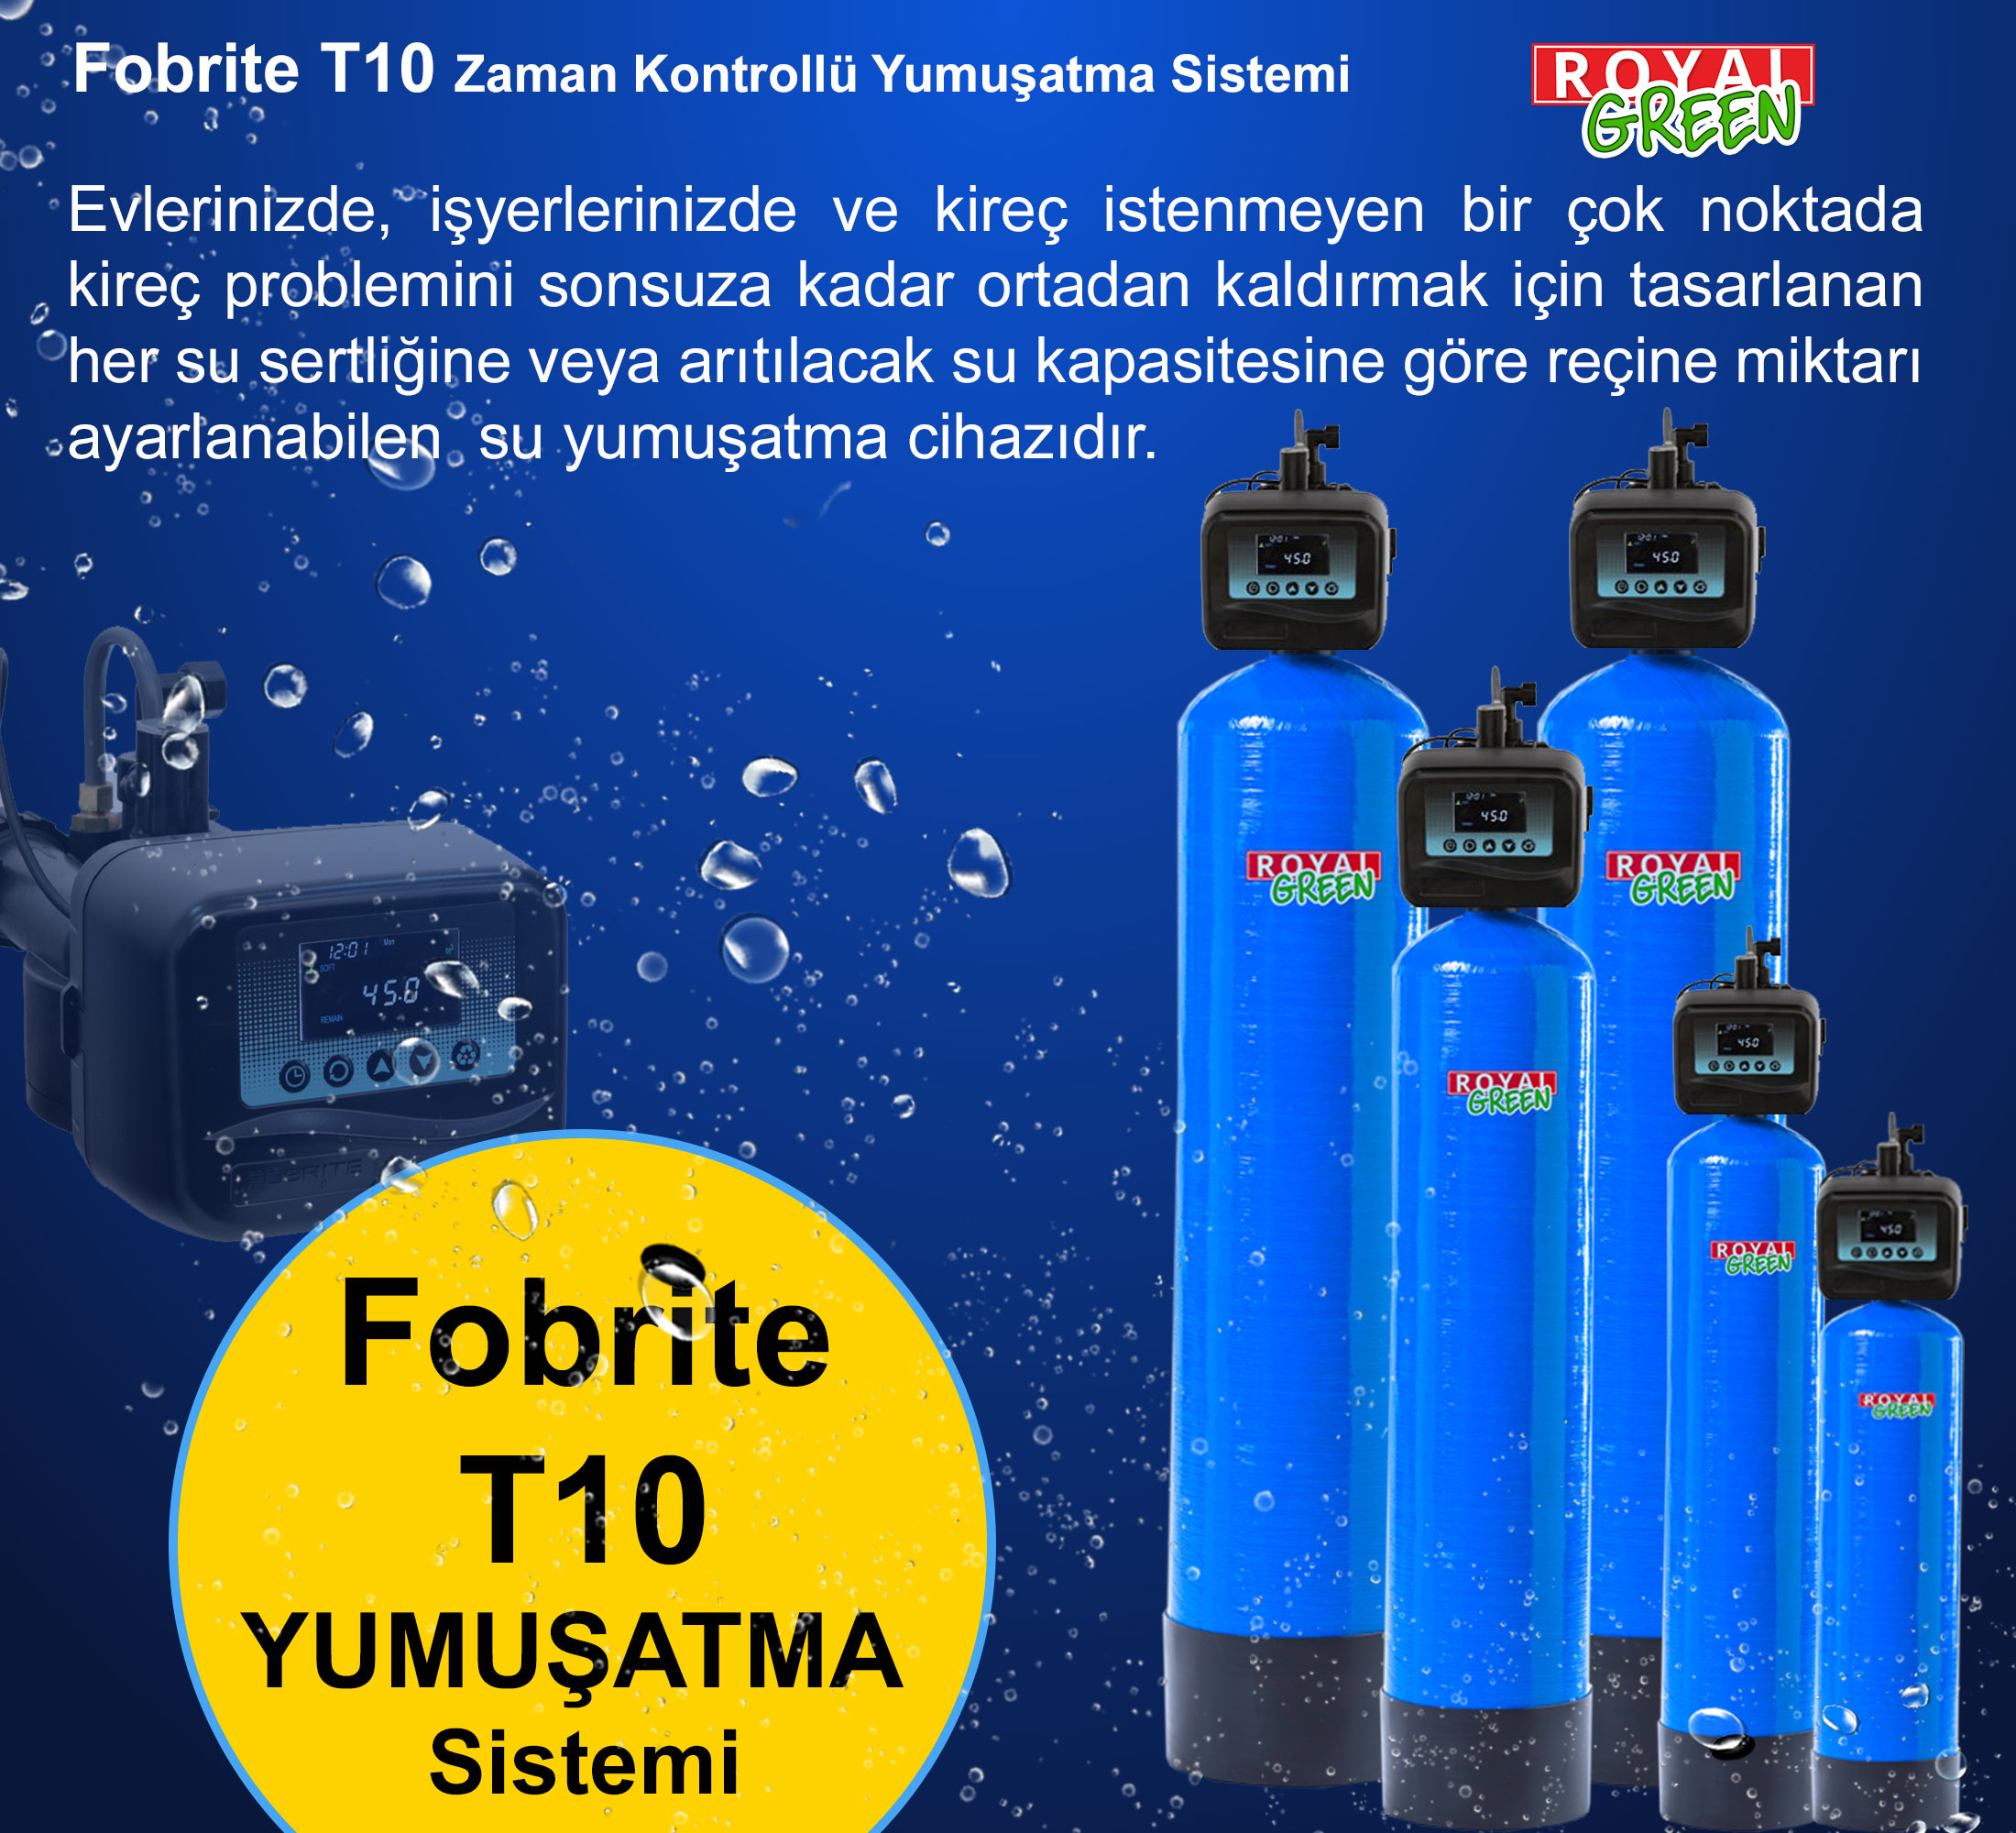 fobrite t10 yumusatma sistemi banner